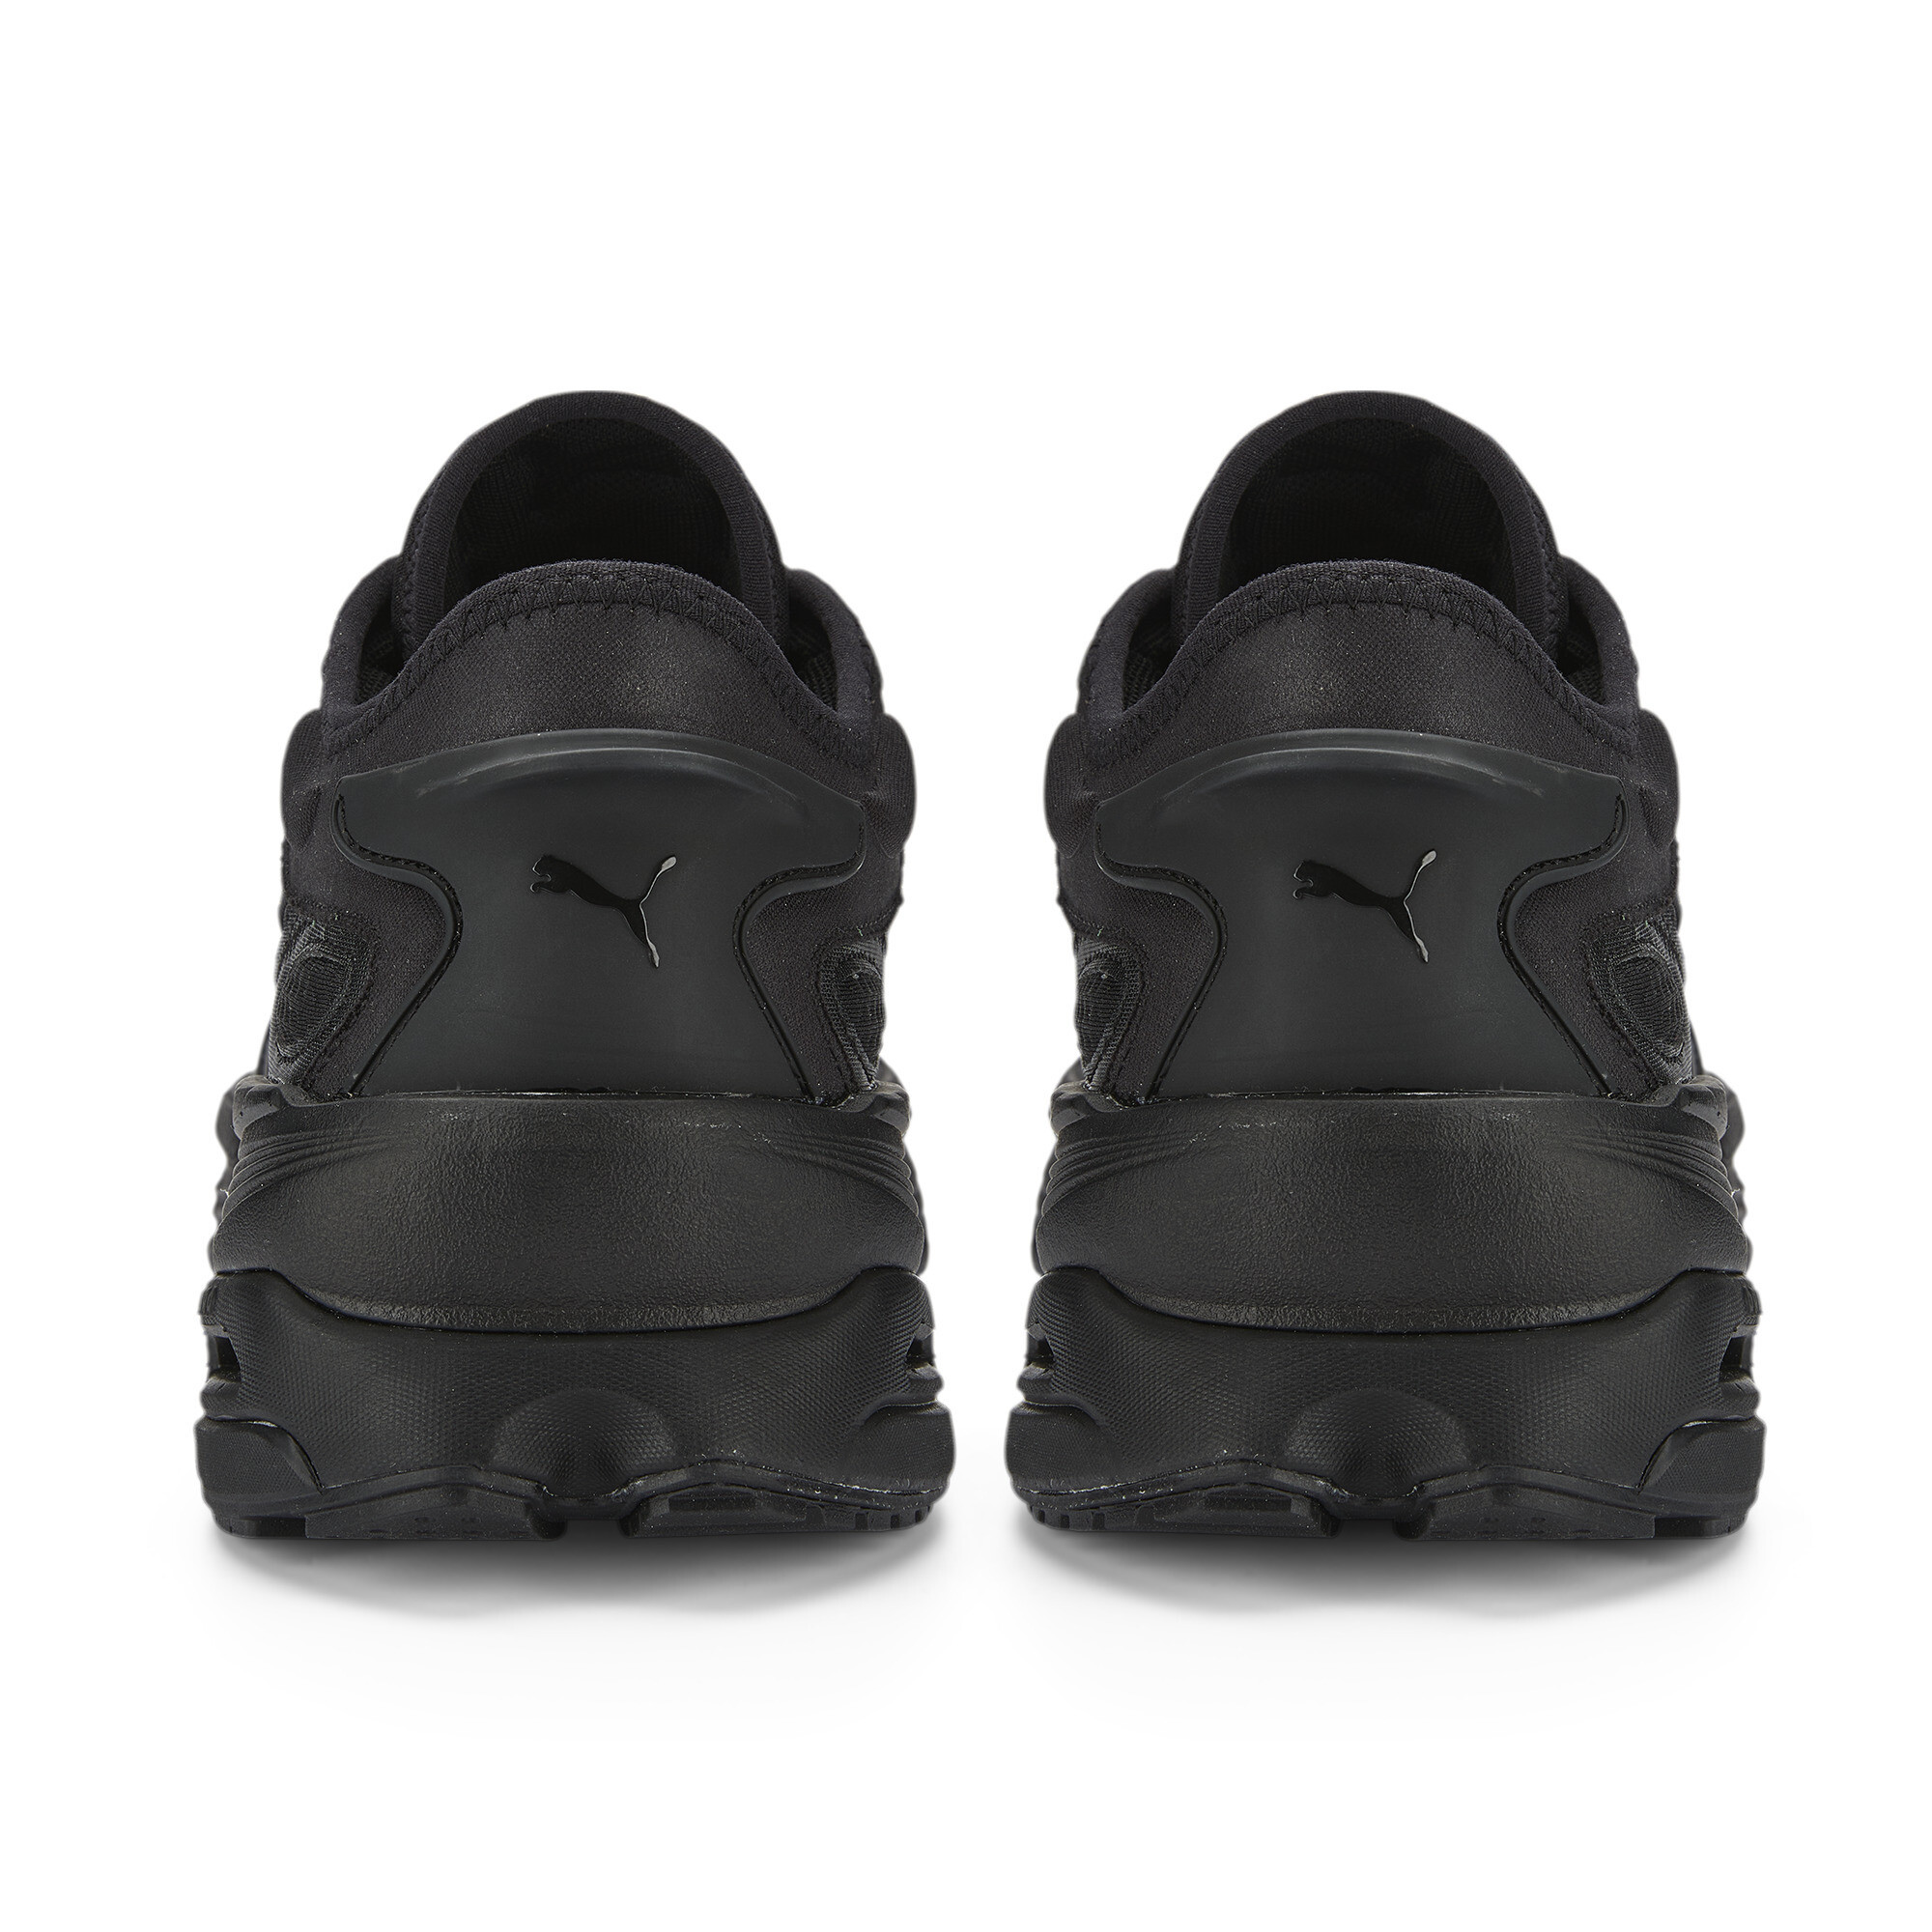 Men's PUMA Extent Nitro Mono Sneakers In 10 - Black, Size EU 38.5